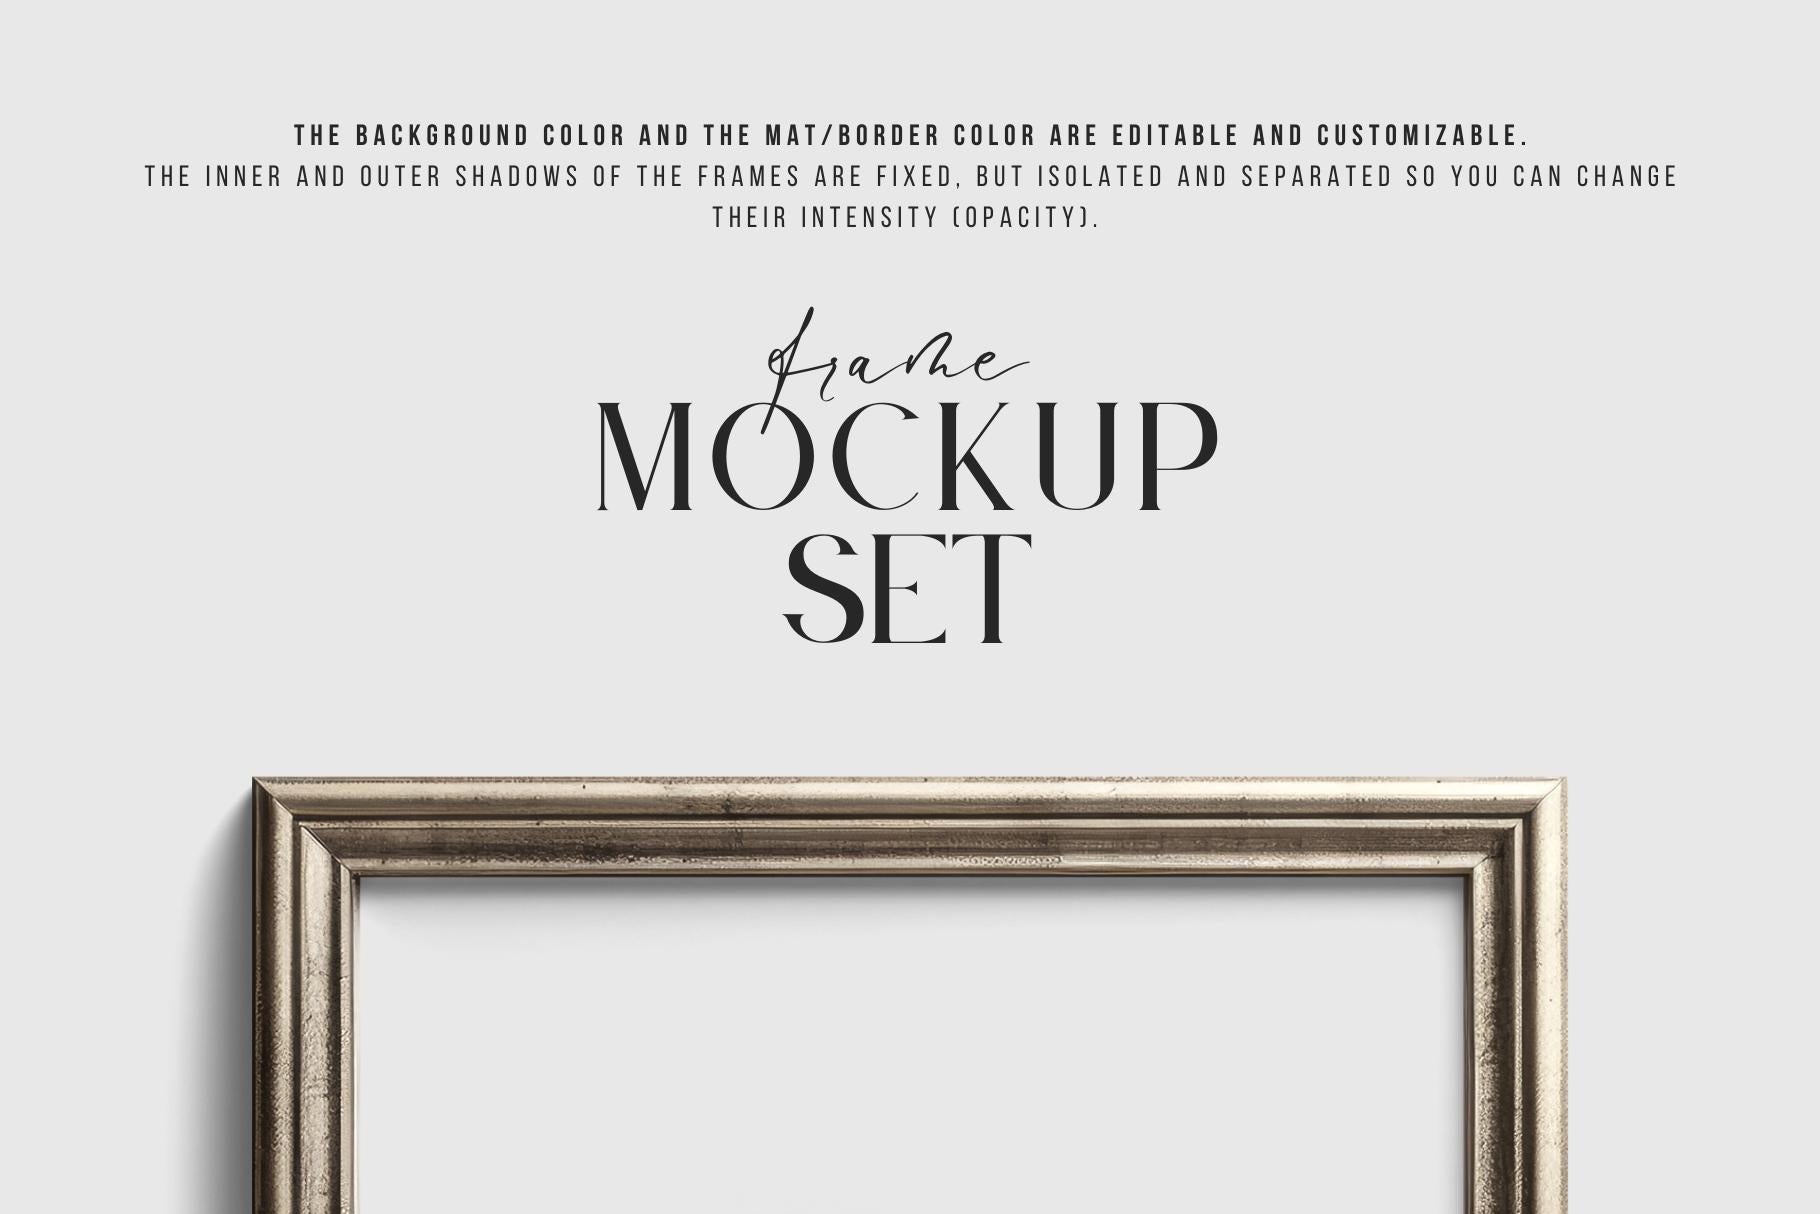 Metallic Frame Mockup Set of 6 Vertical Frames 3:4 | Vintage Silver Frame Mockup Set | PSD Template + Transparent PNG Files